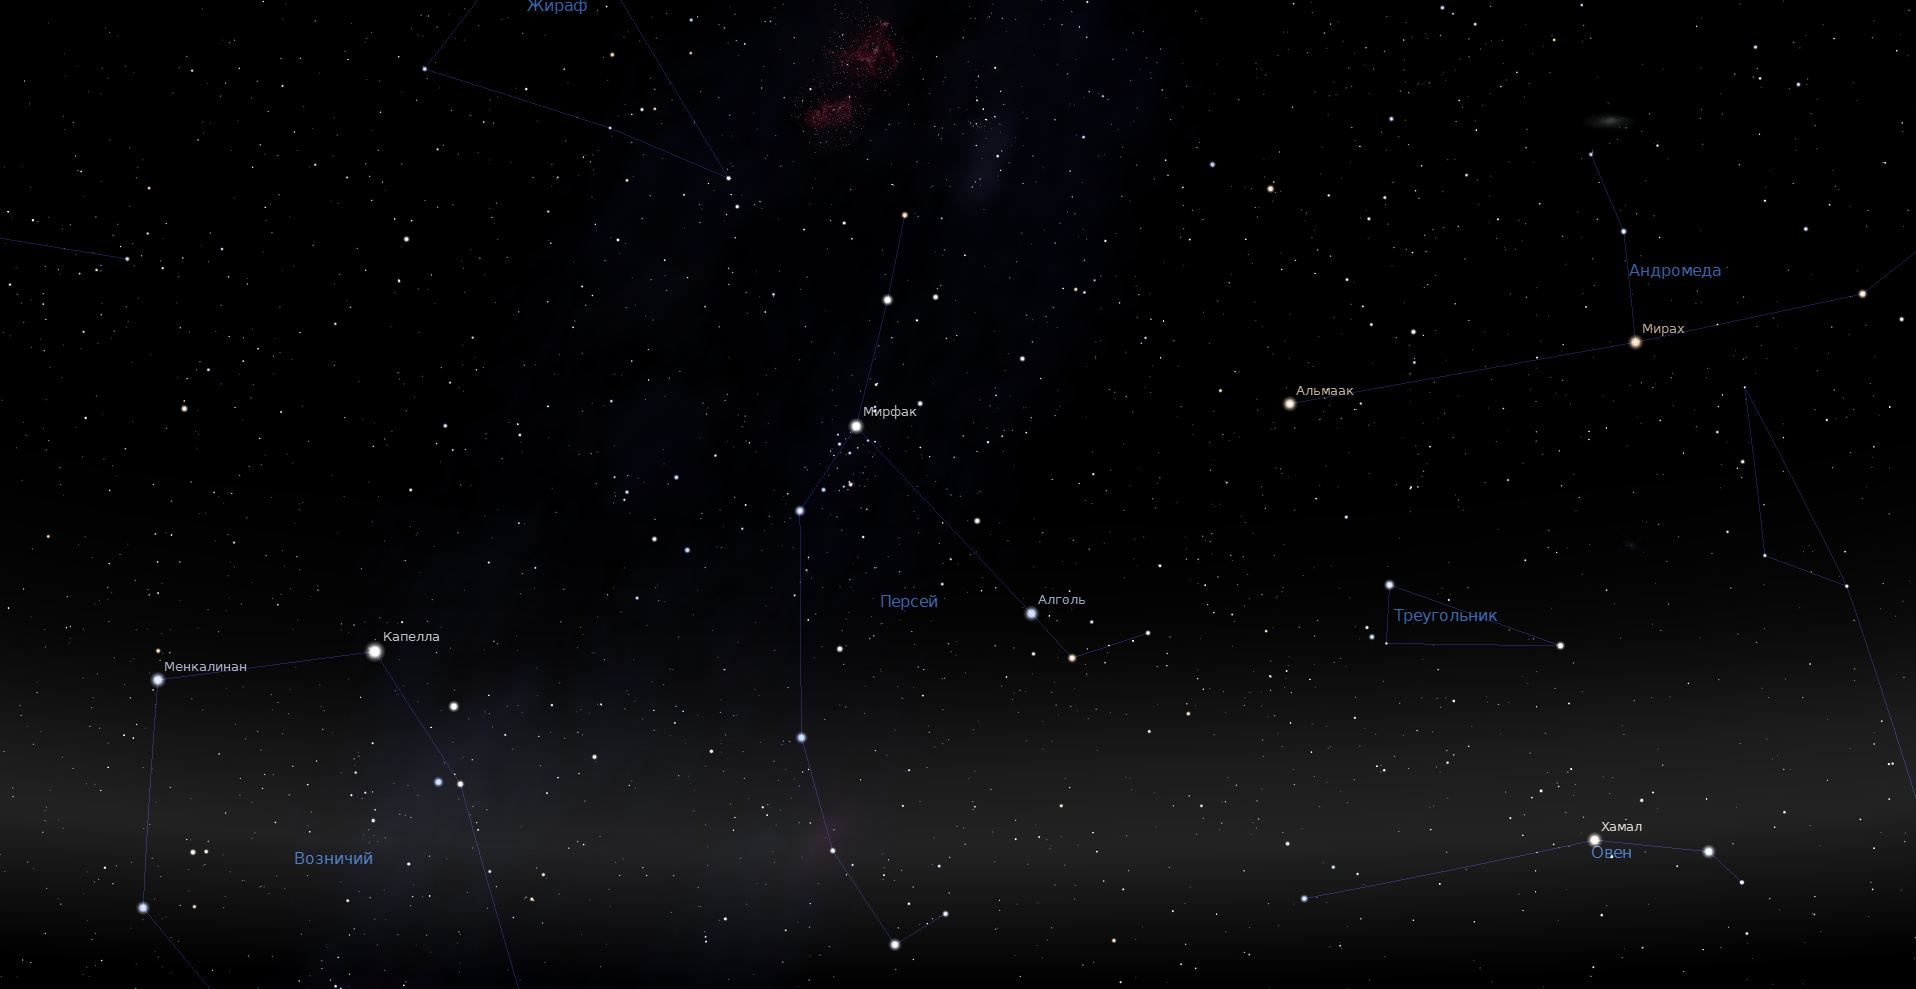 La constellation de Persée dans le ciel nocturne